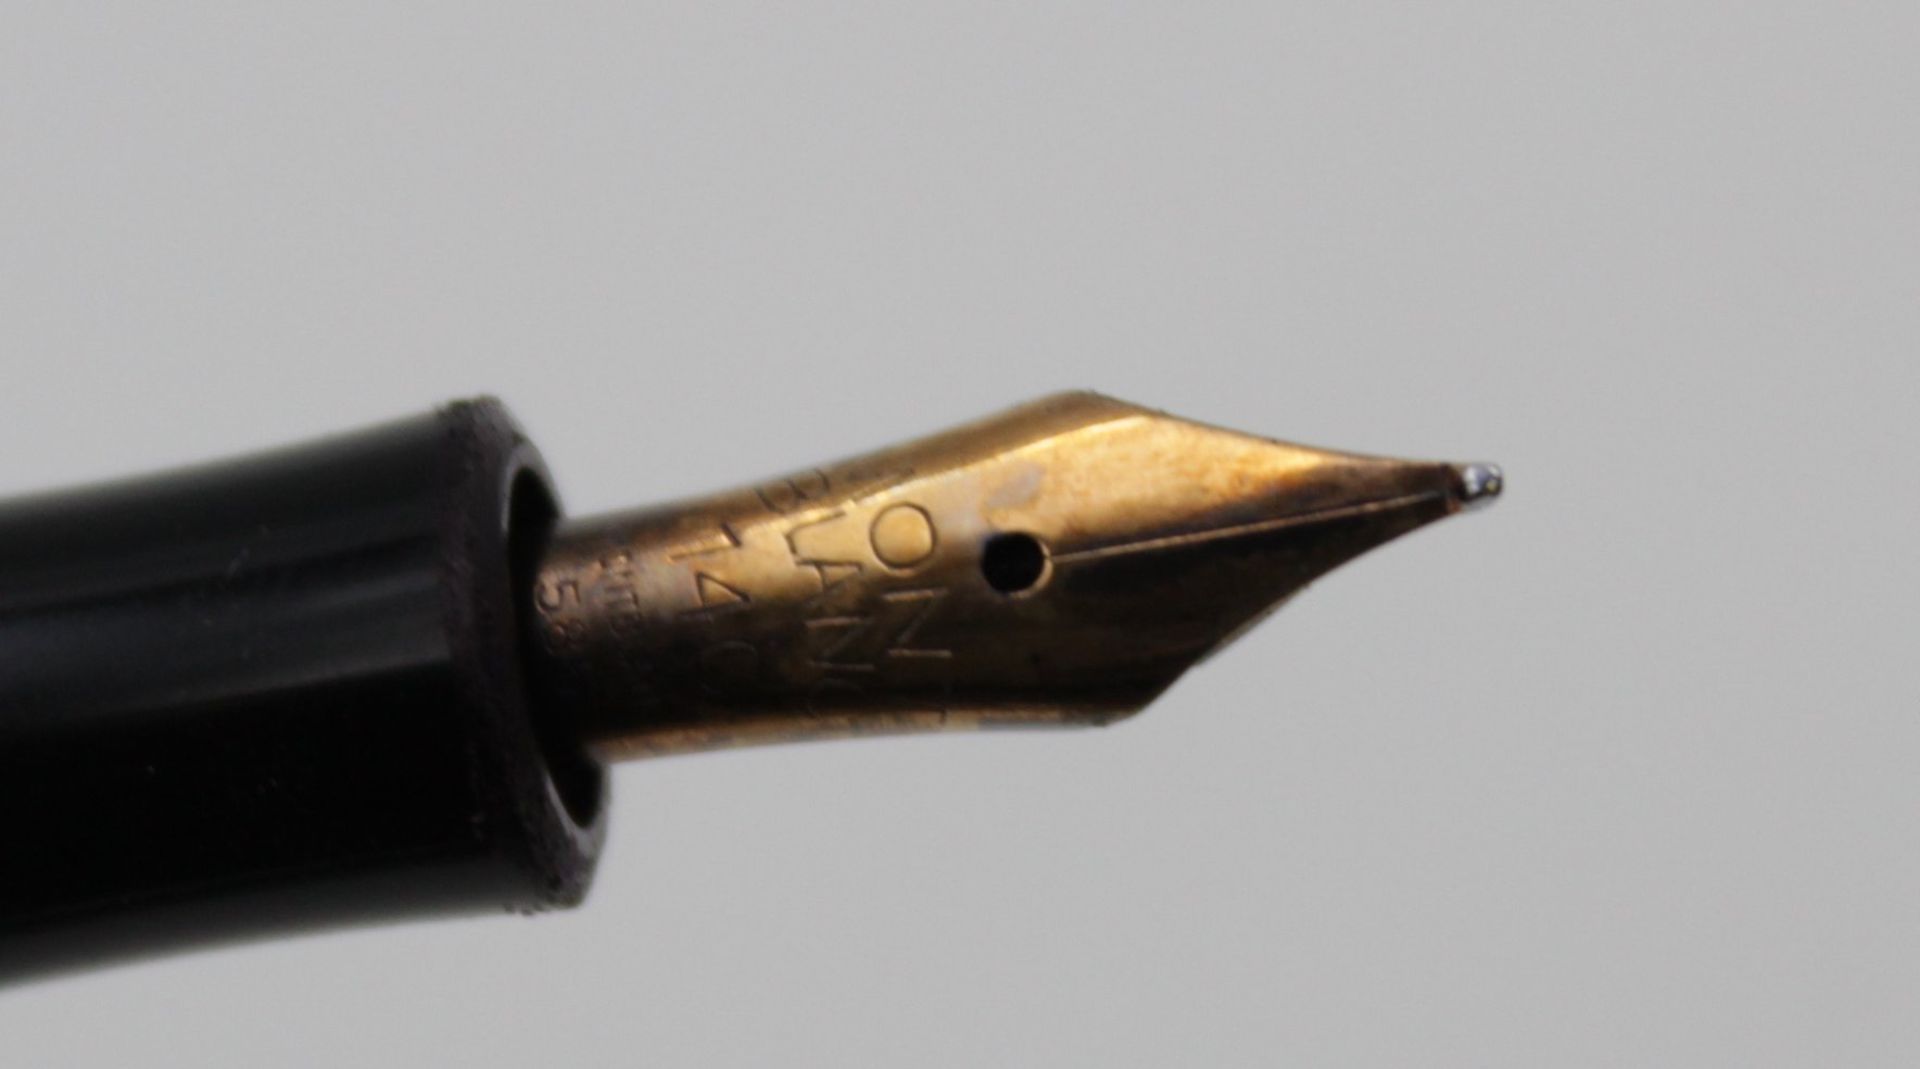 Kolbenfüller, Montblanc, Nr. 3-42G, 14ct Goldfeder, leichte Gebrauchsspuren - Bild 4 aus 4